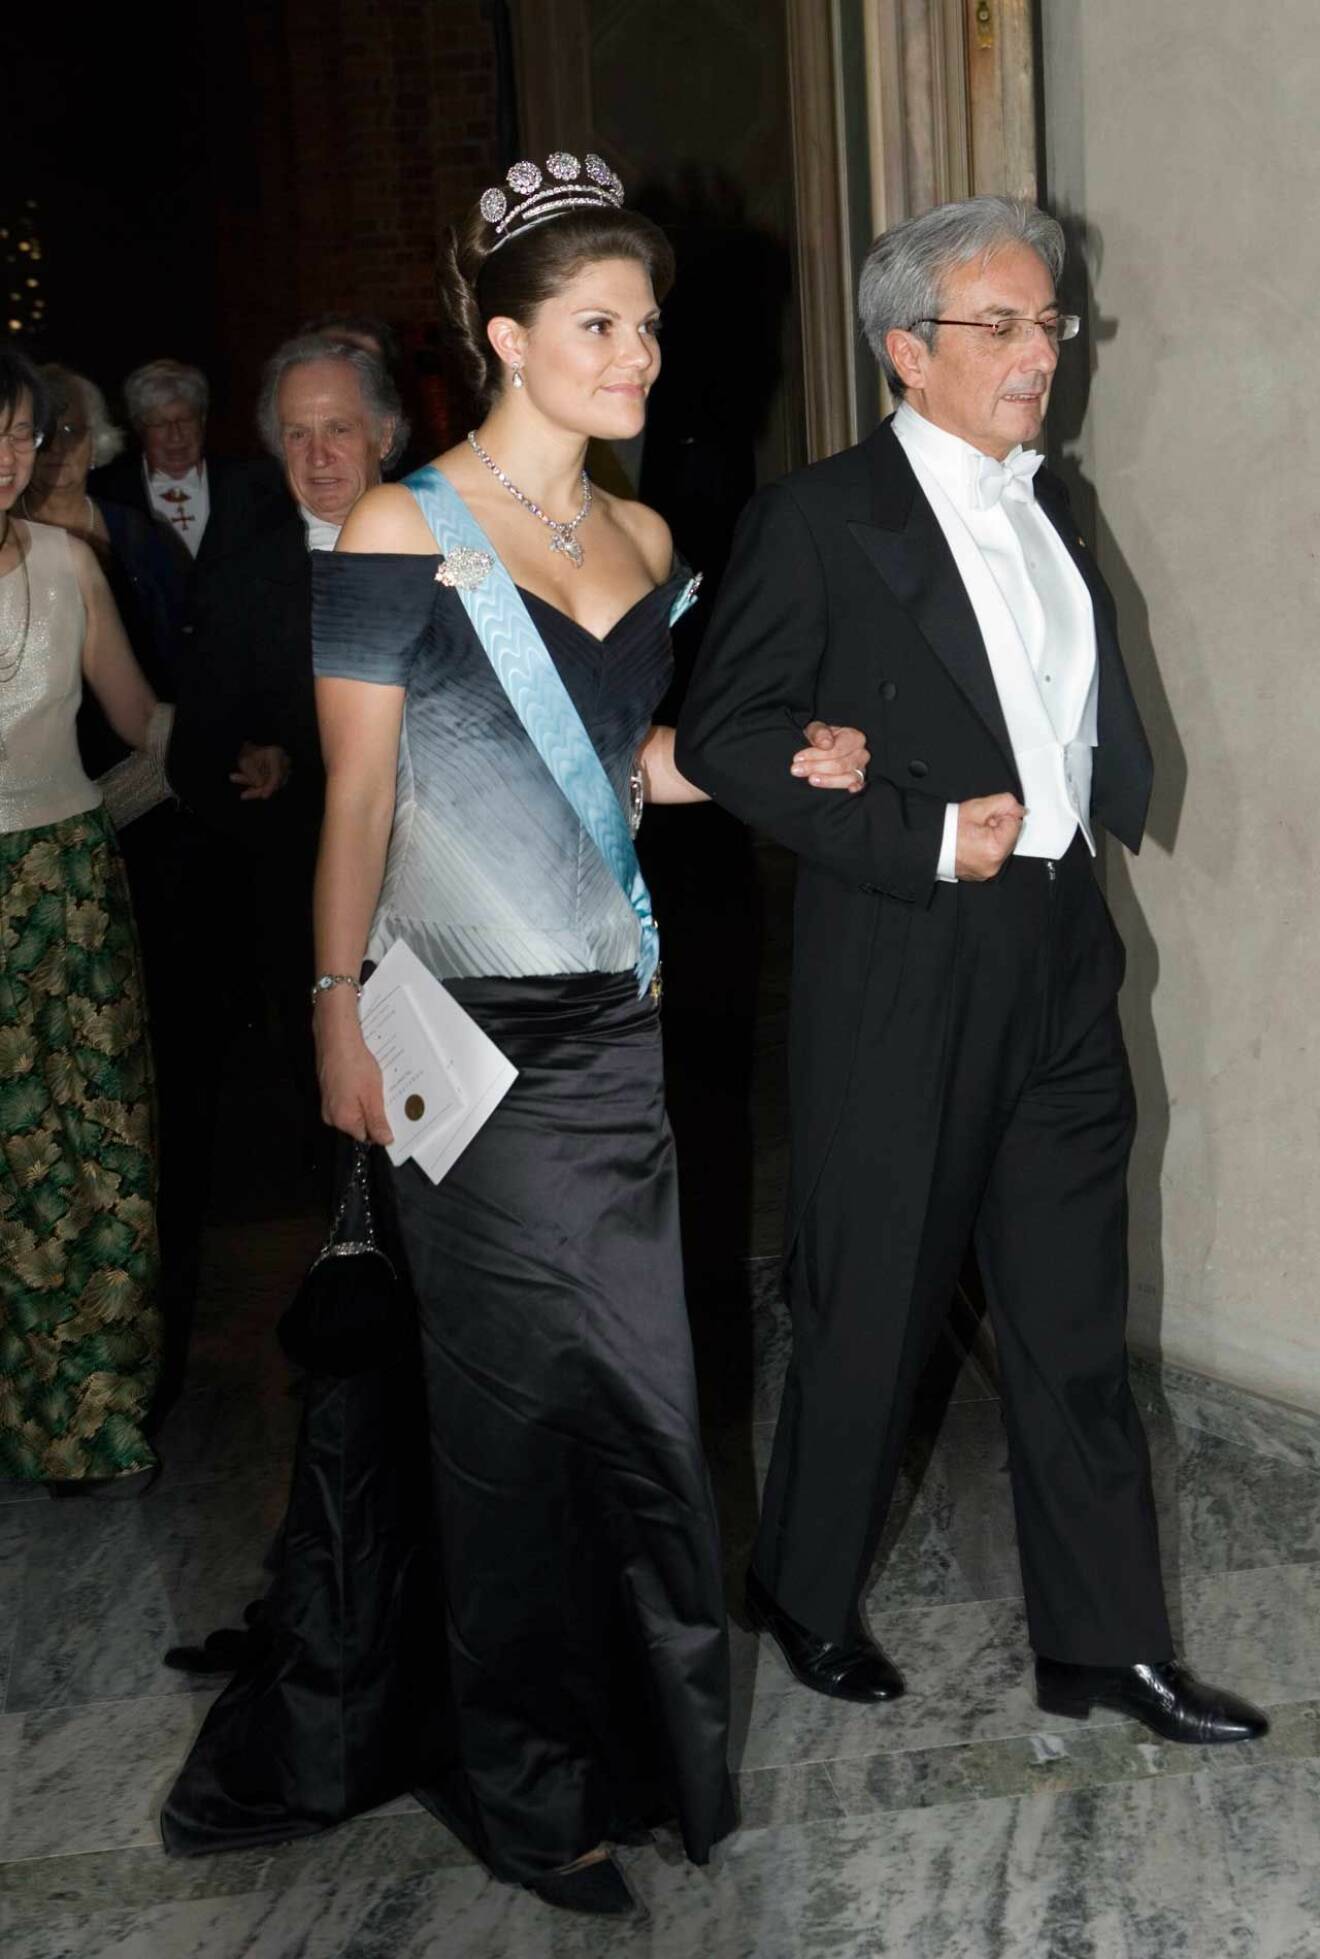 2007 bar kronprinsessan Victoria en chiffongklänning i vitt, svart och grått av Pär Engsheden